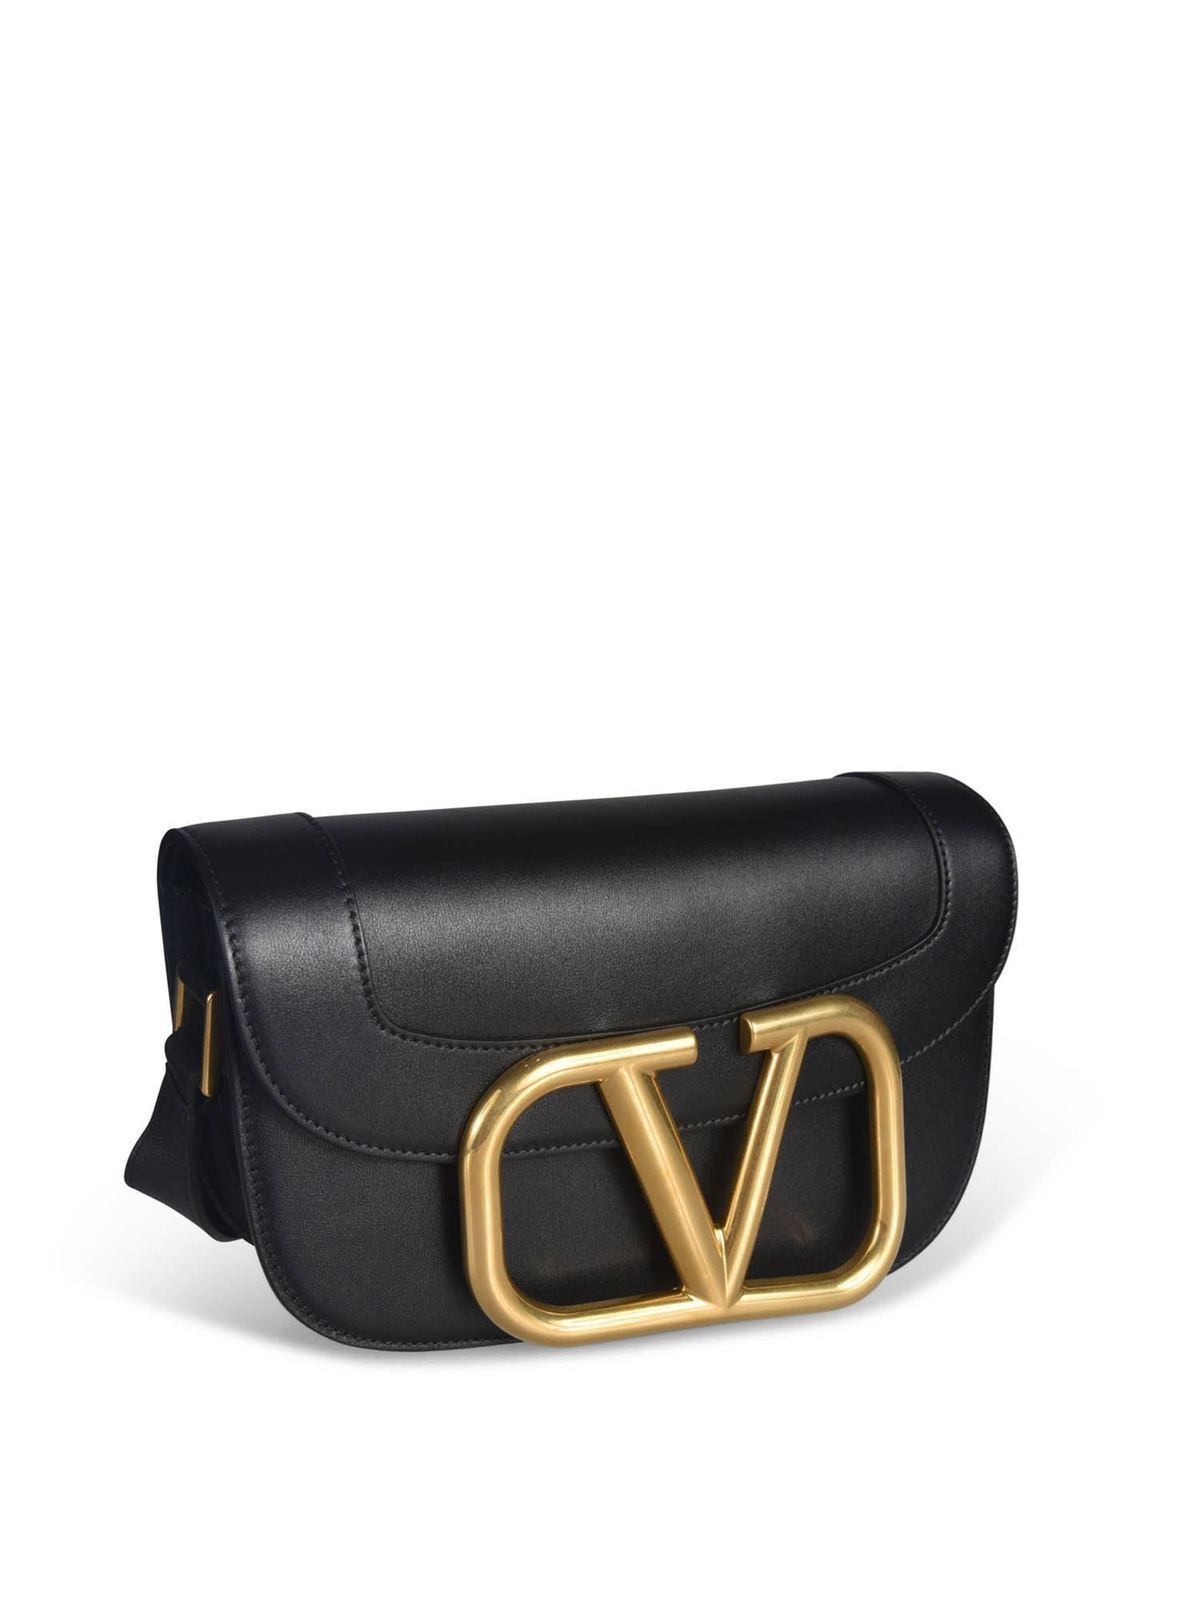 Valentino Garavani Supervee Smooth Leather Shoulder Bag